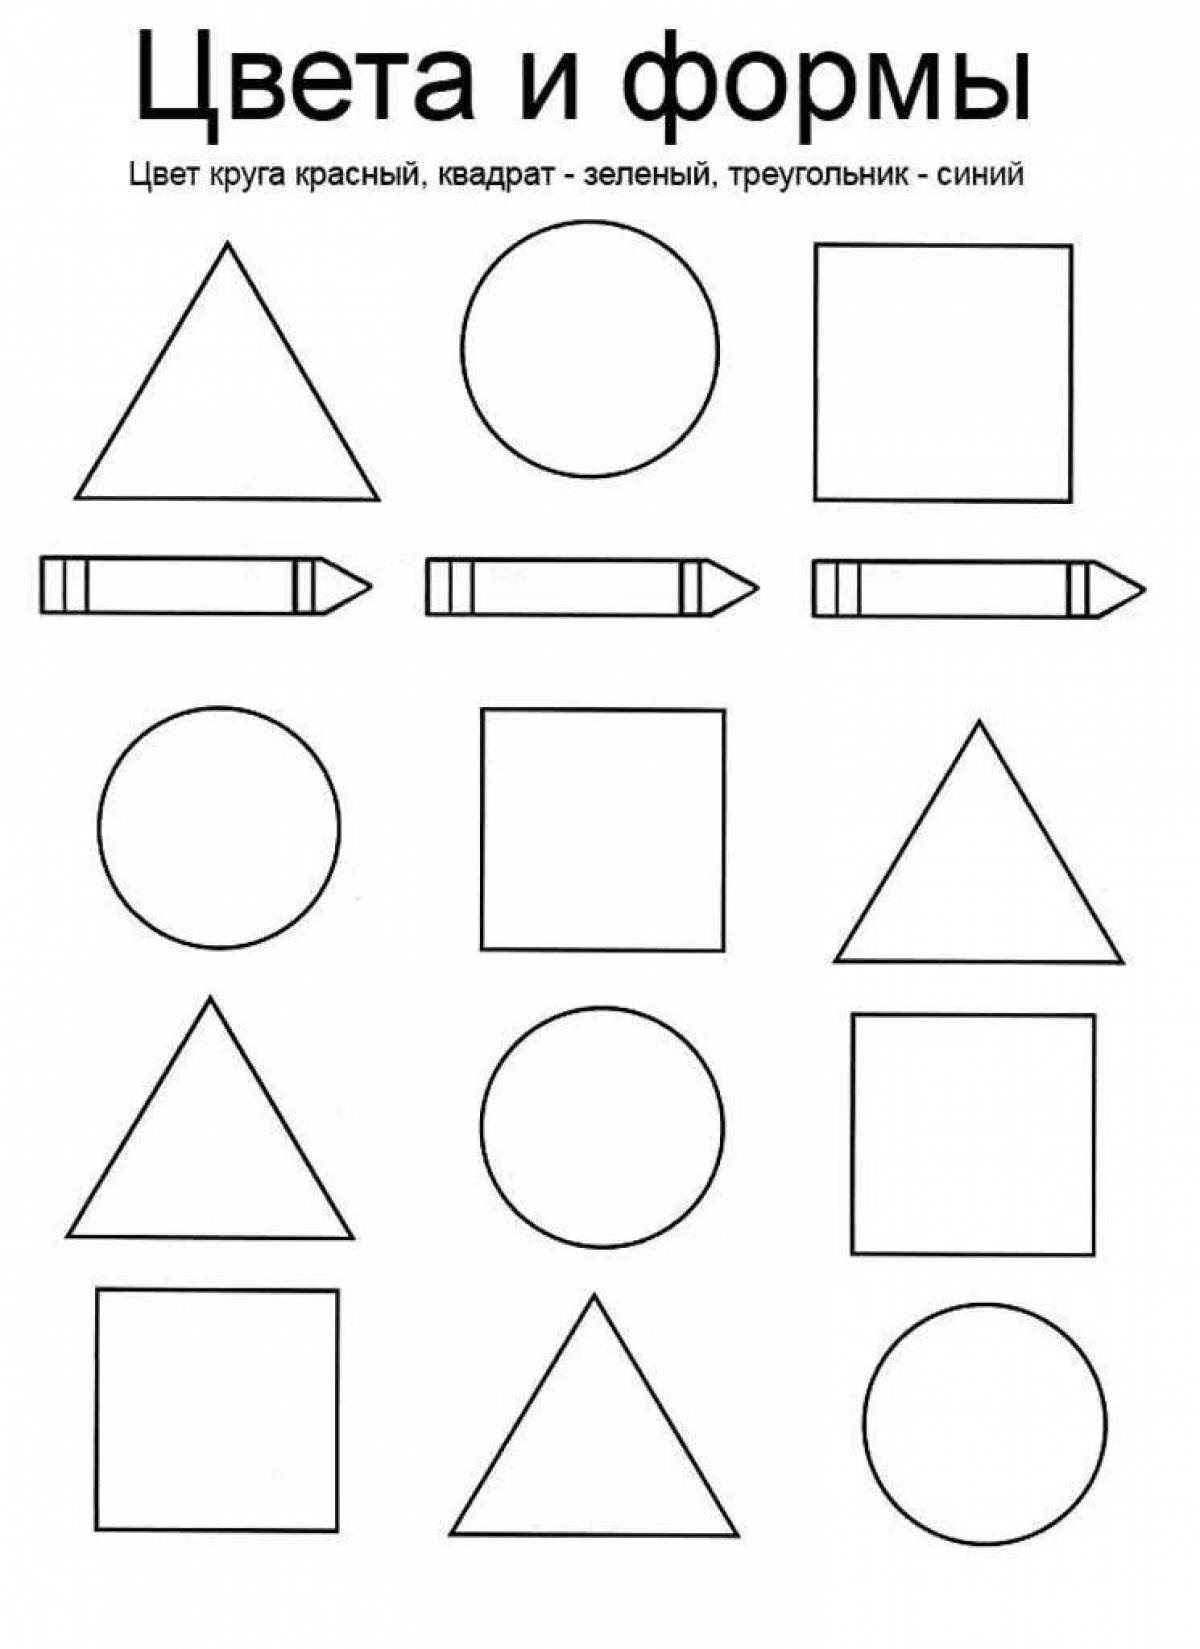 Geometric shapes #13